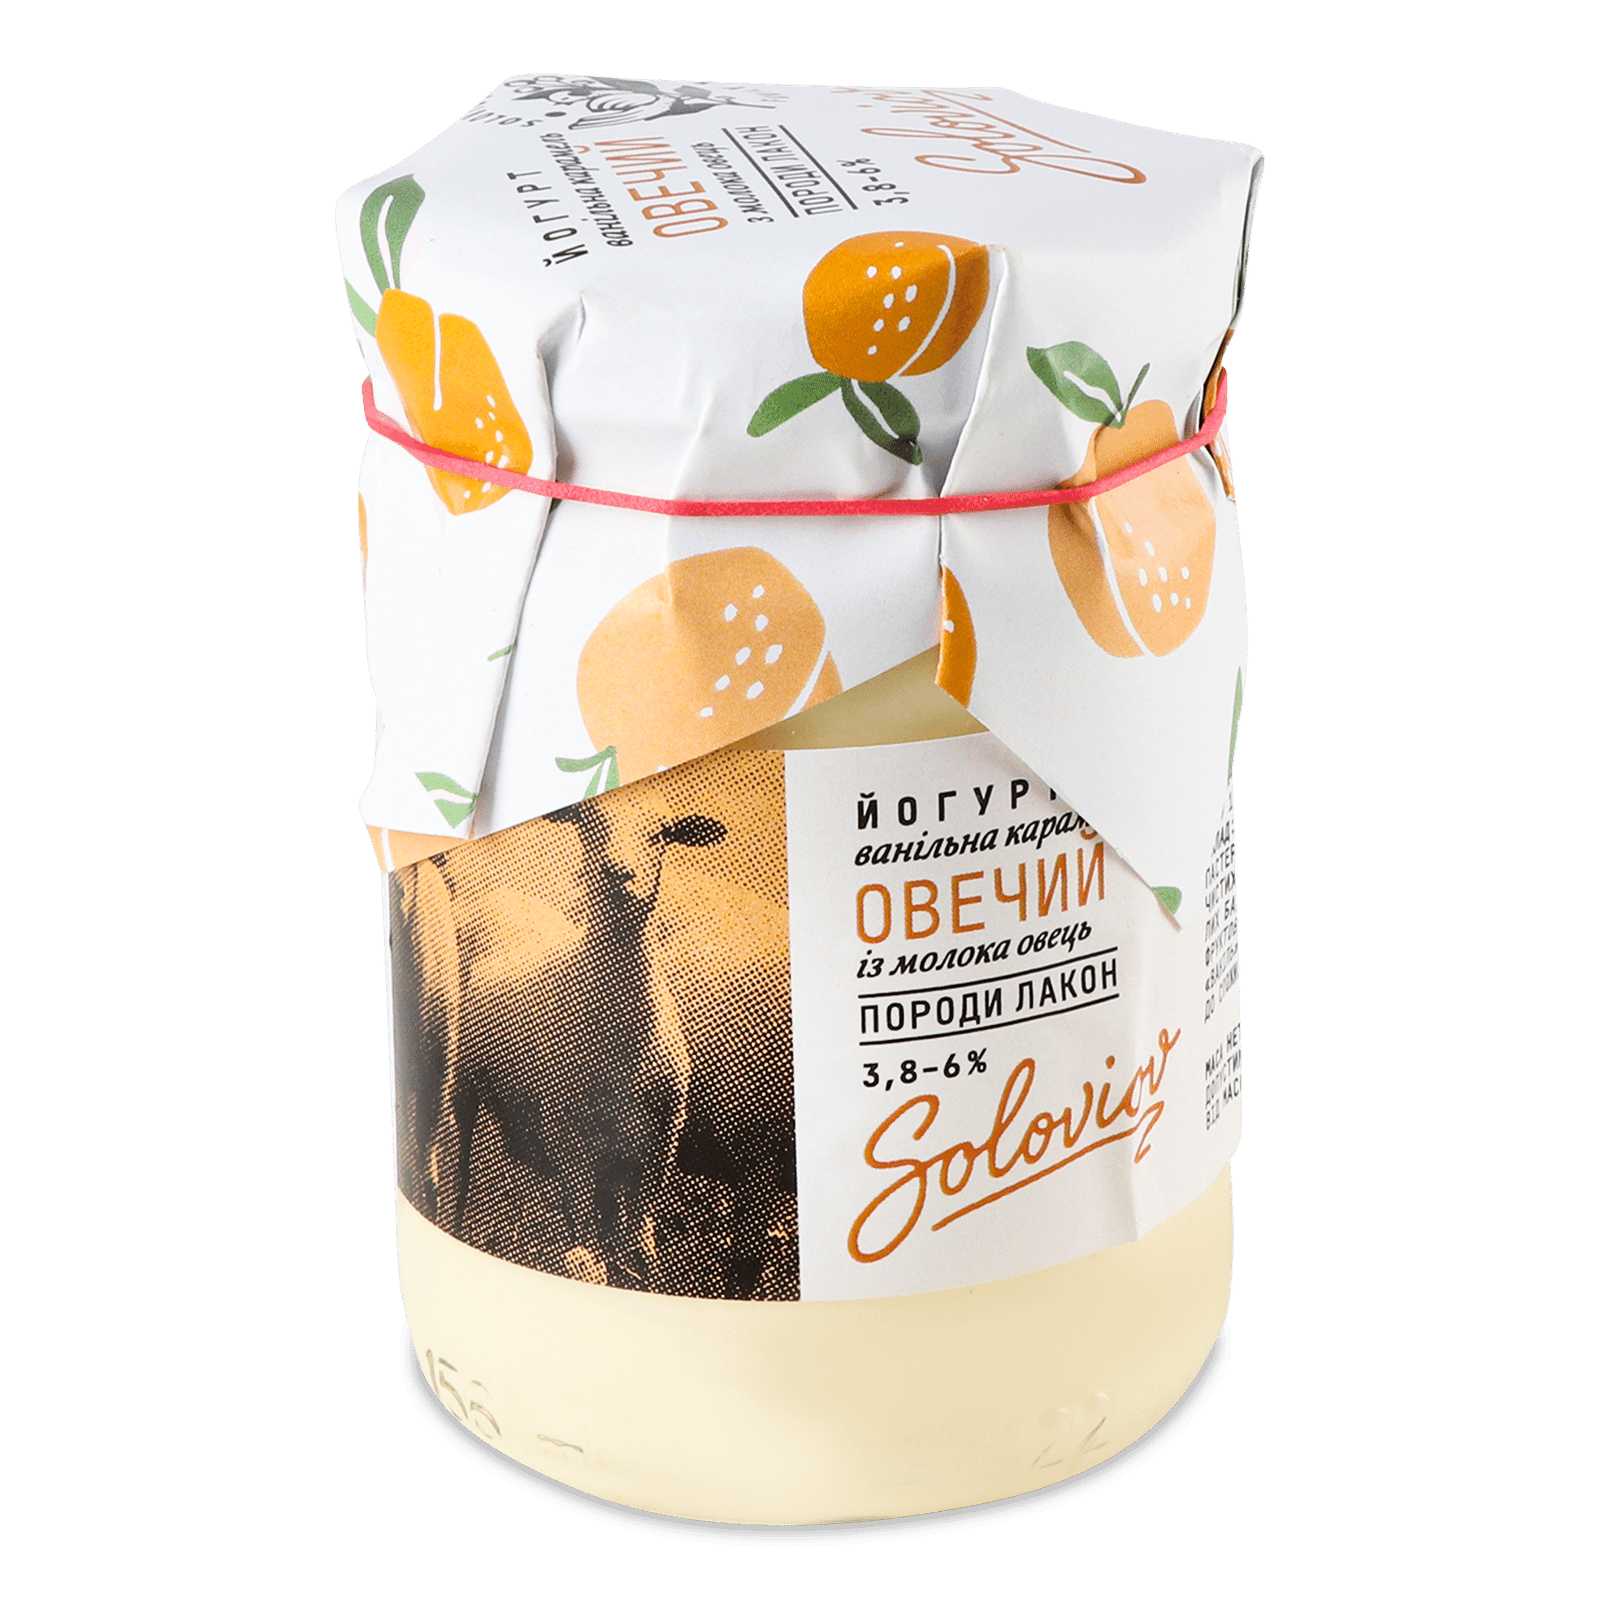 Йогурт «Лавка Традицій» «Ванільна карамель» Soloviov з овечого молока 3.8-6% - 1